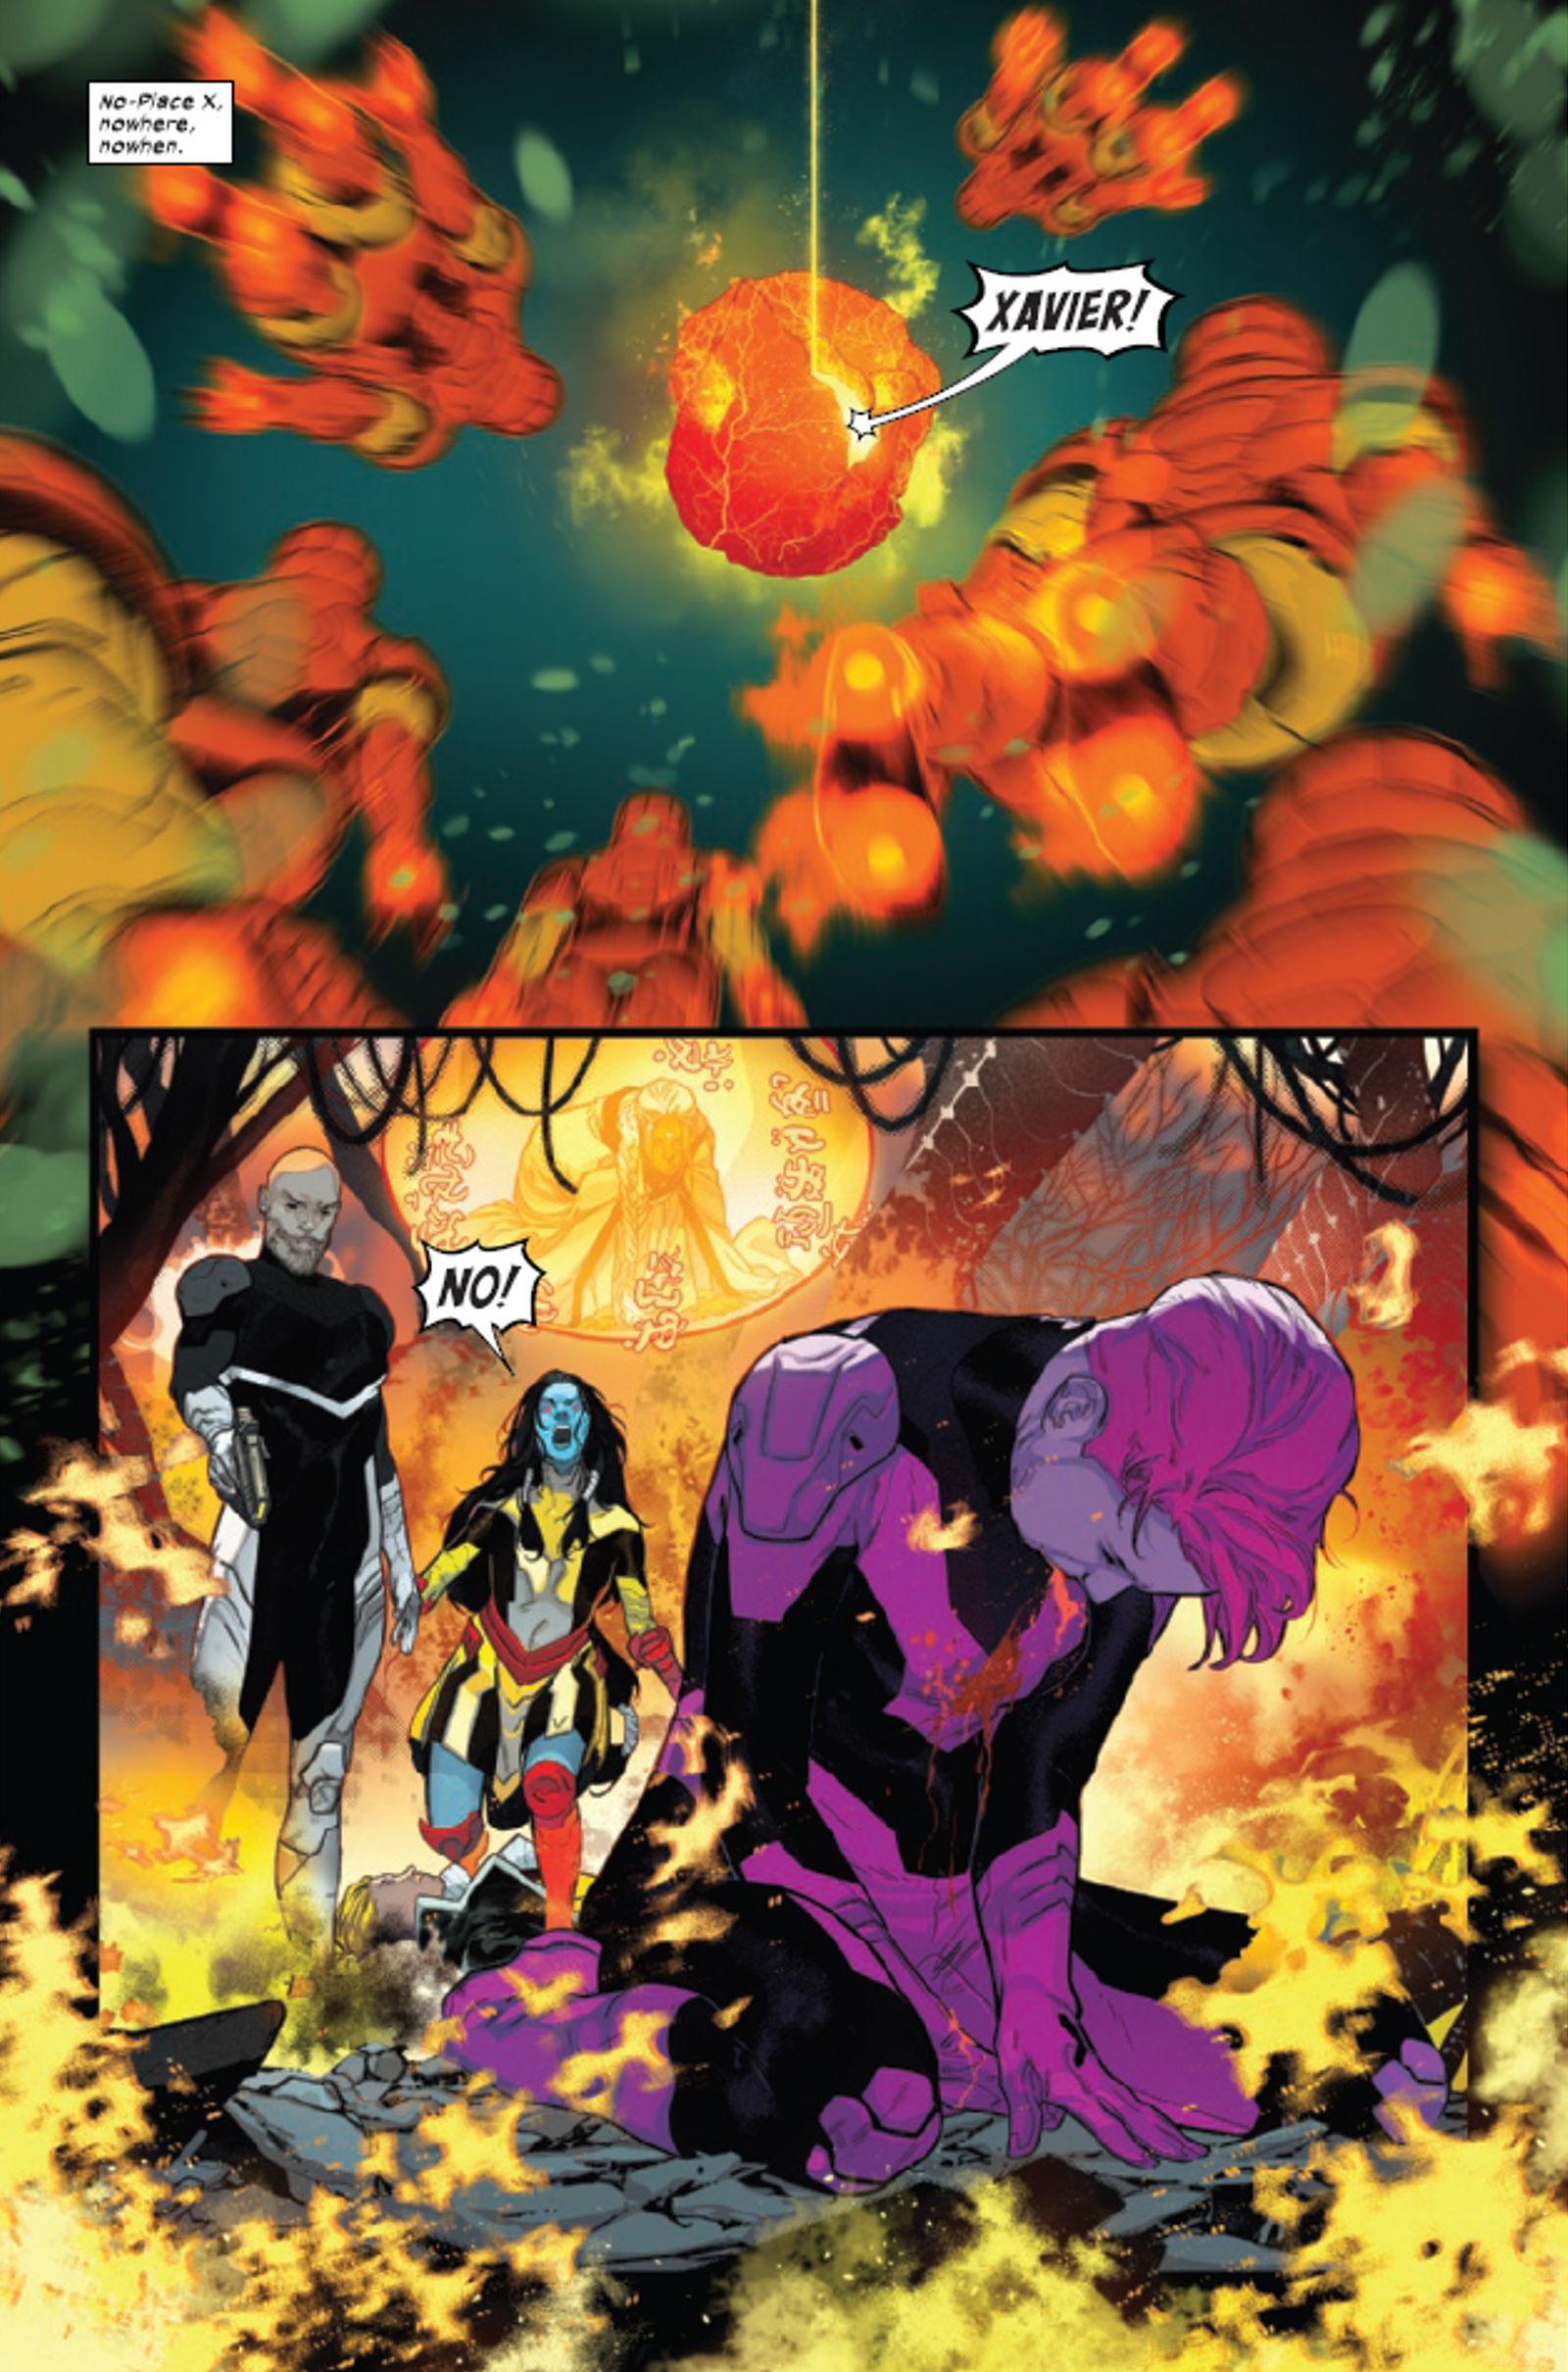 Профессор Икс ведет битву не на жизнь, а на смерть против опасного мутанта из Marvel